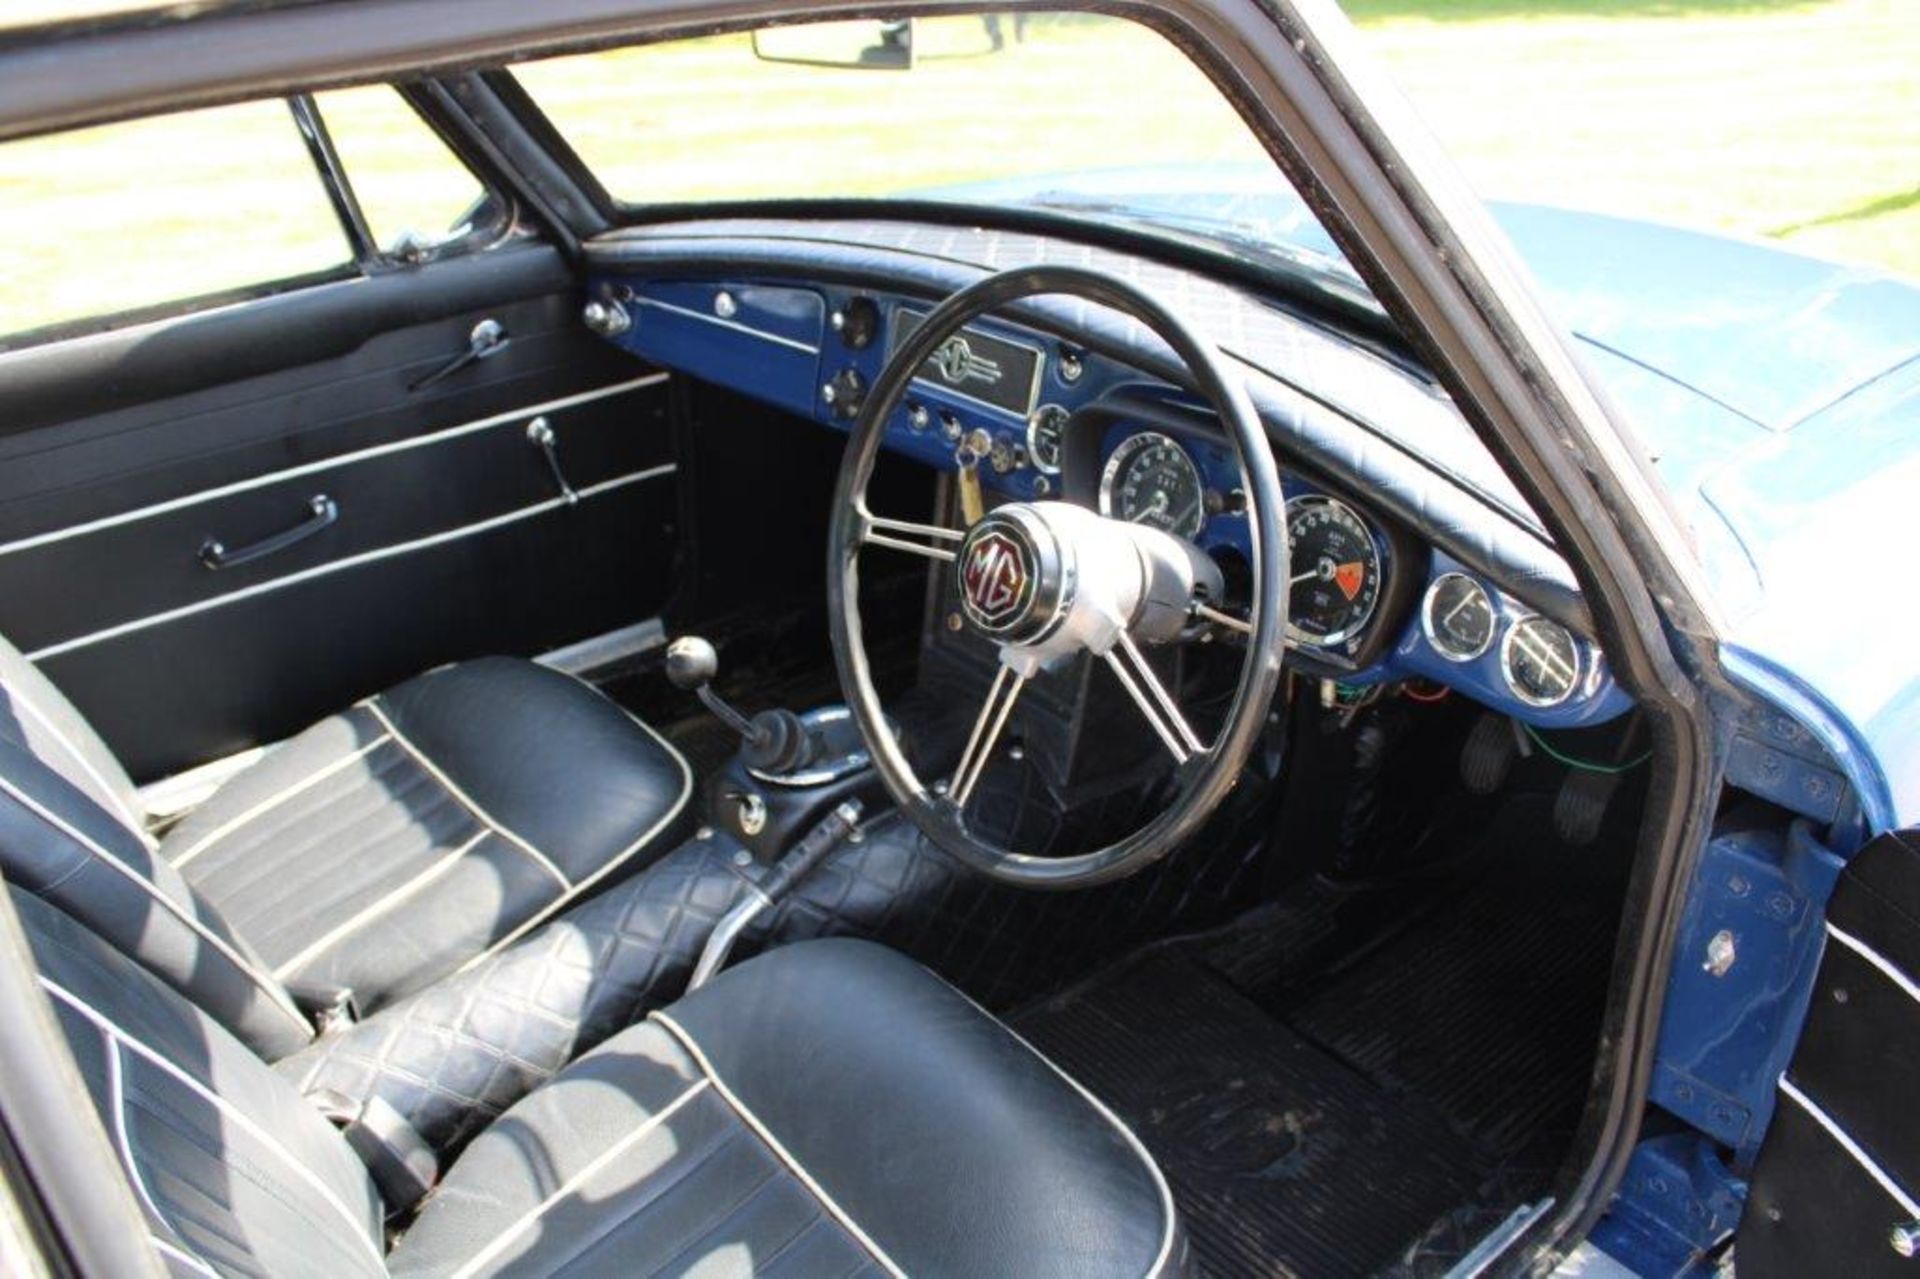 1967 MG BGT - Image 11 of 24